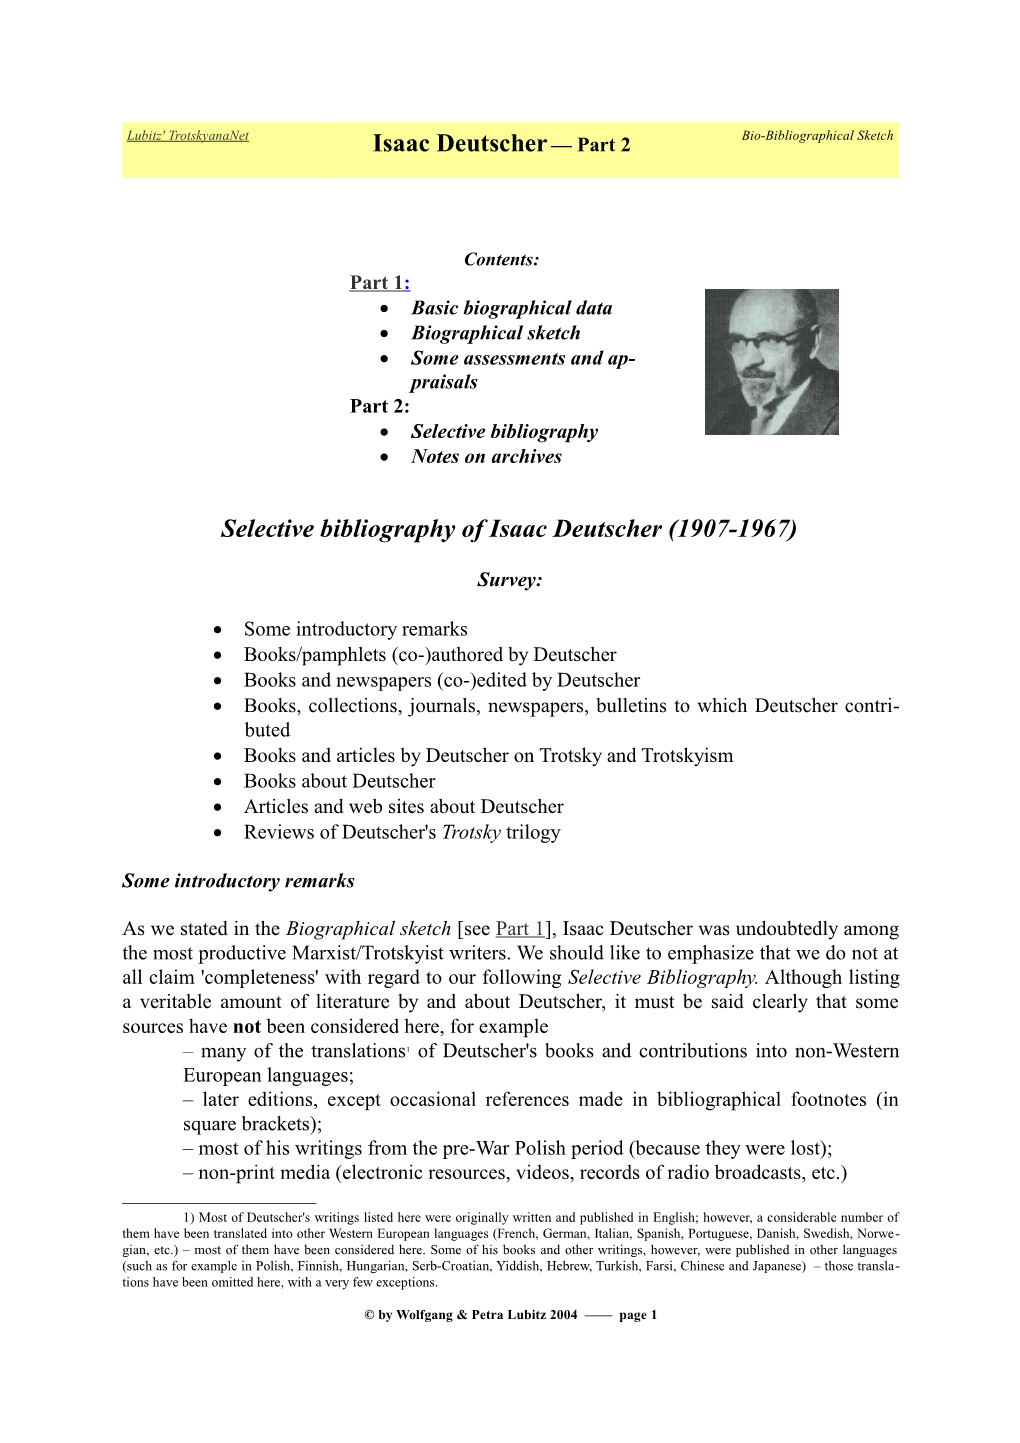 Selective Bibliography of Isaac Deutscher (1907-1967)